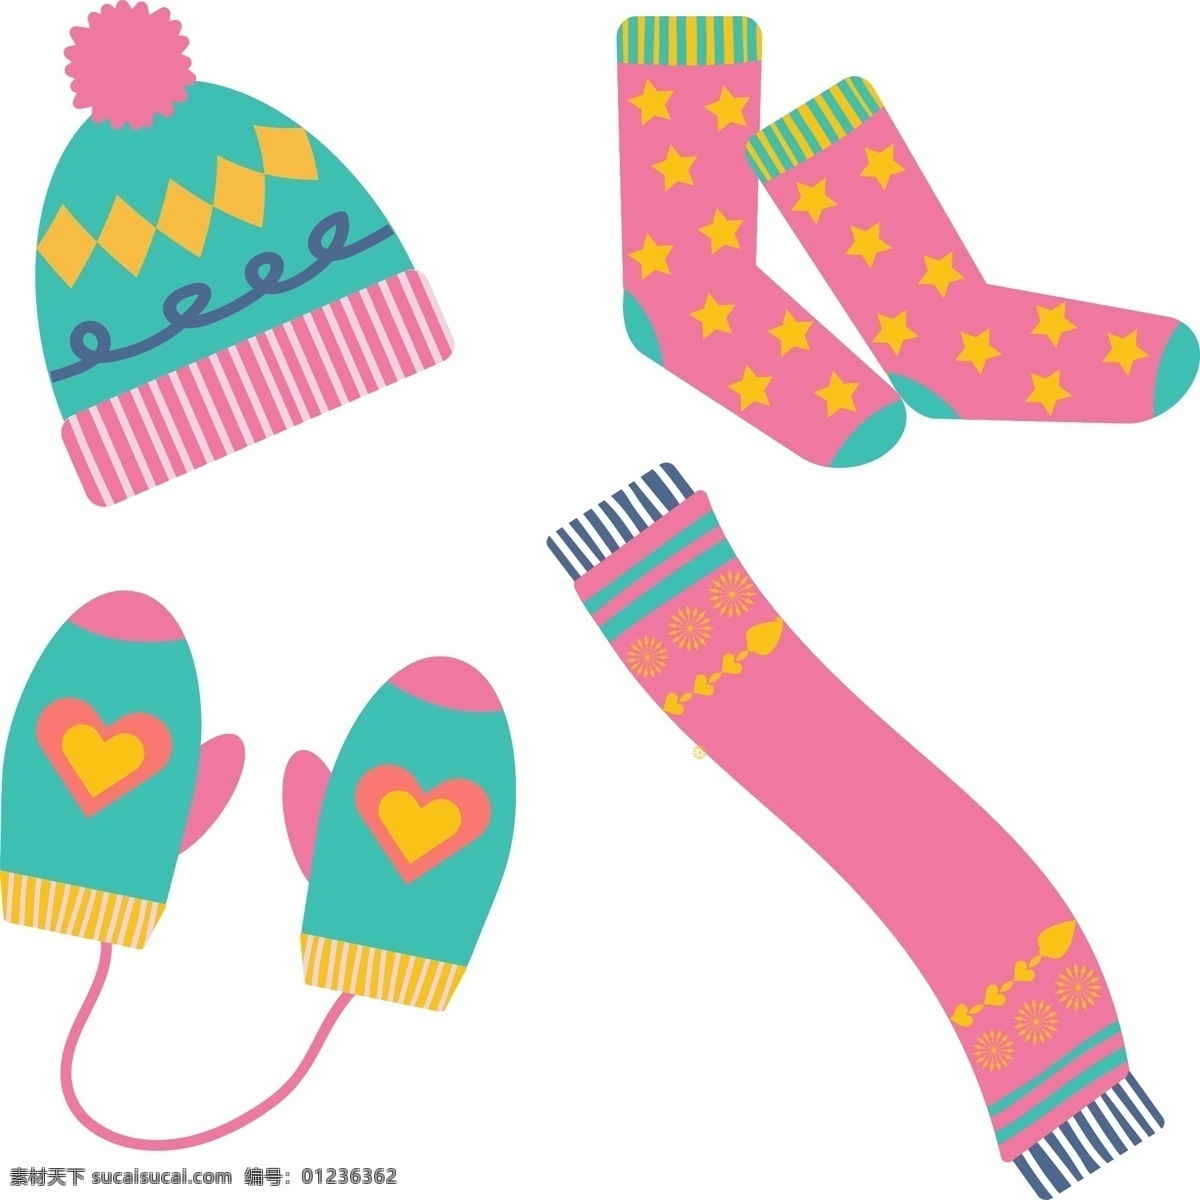 简单 冬季 保温 必要 插图 开襟 羊毛衫 冬天 可爱 帽子 围巾 温暖 提示 说明 袜子 元素 副 手套